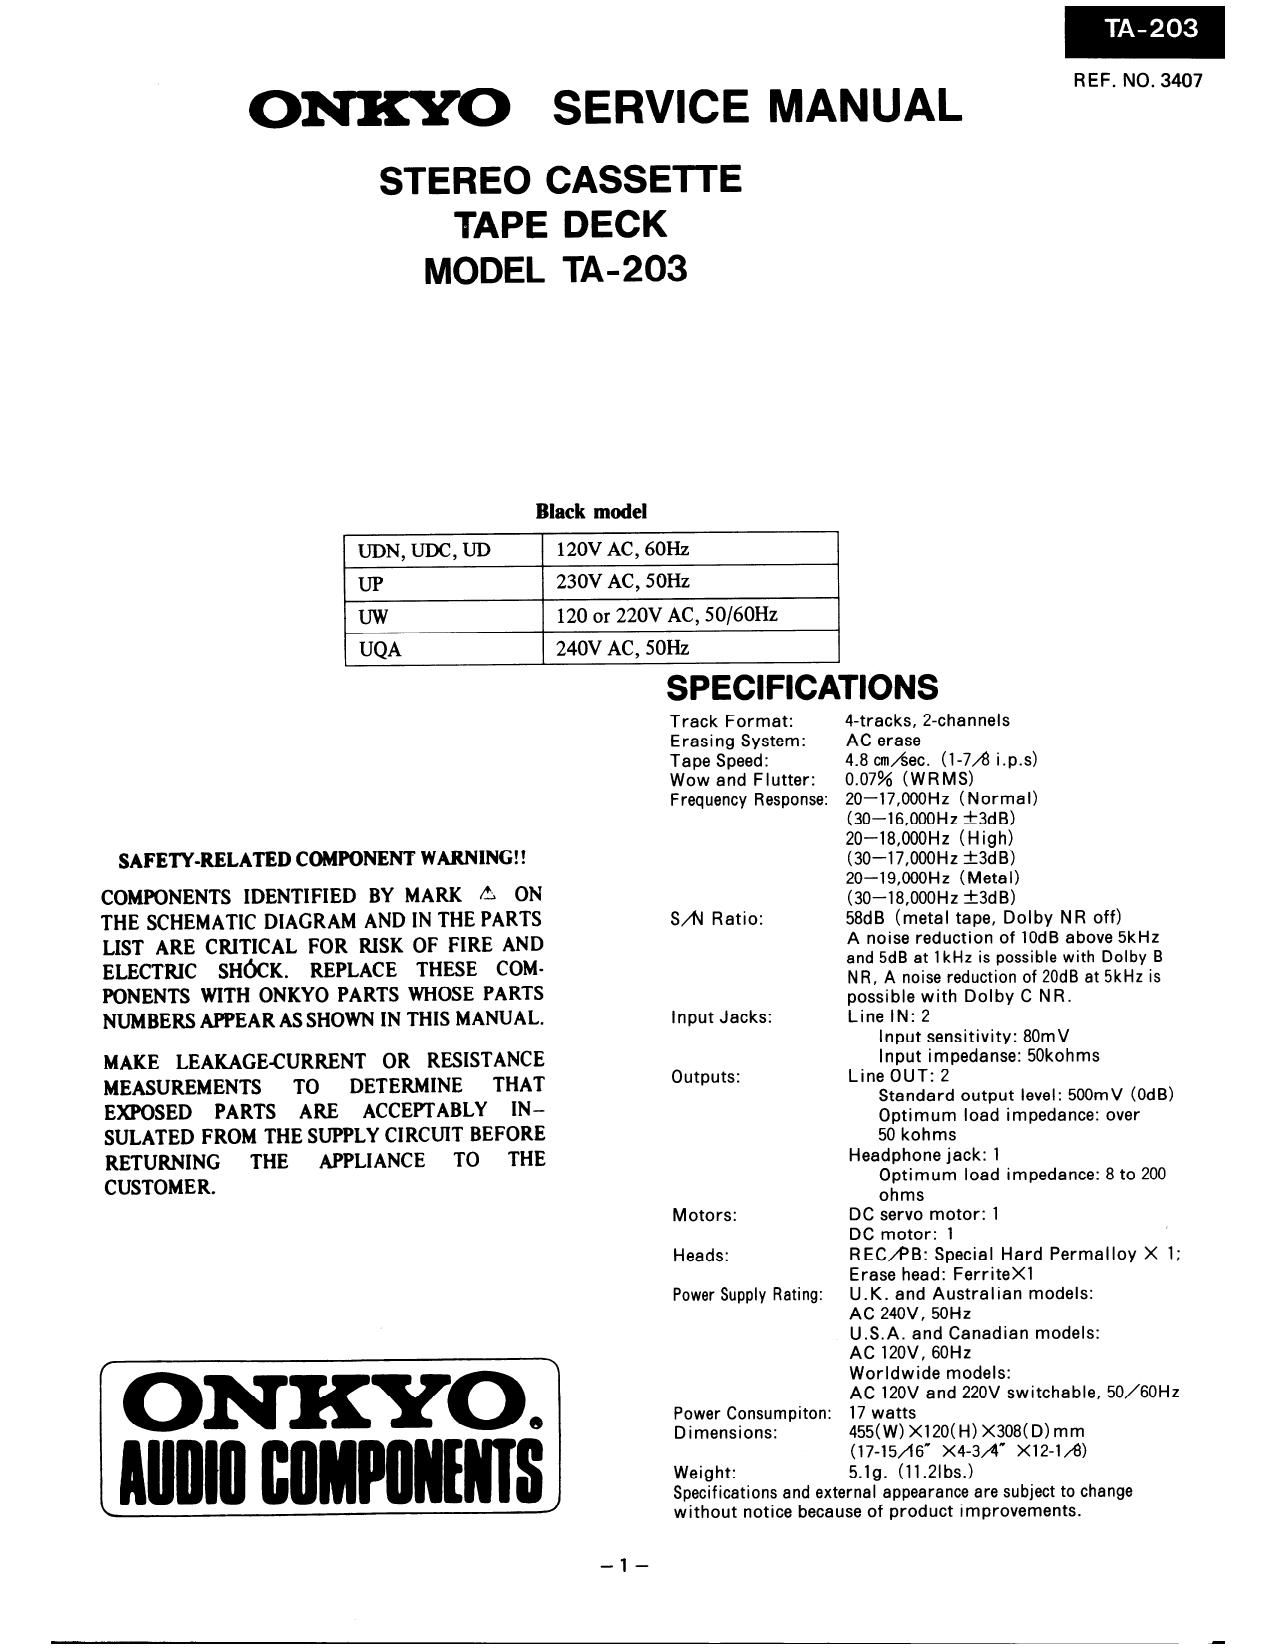 Onkyo TA 203 Service Manual